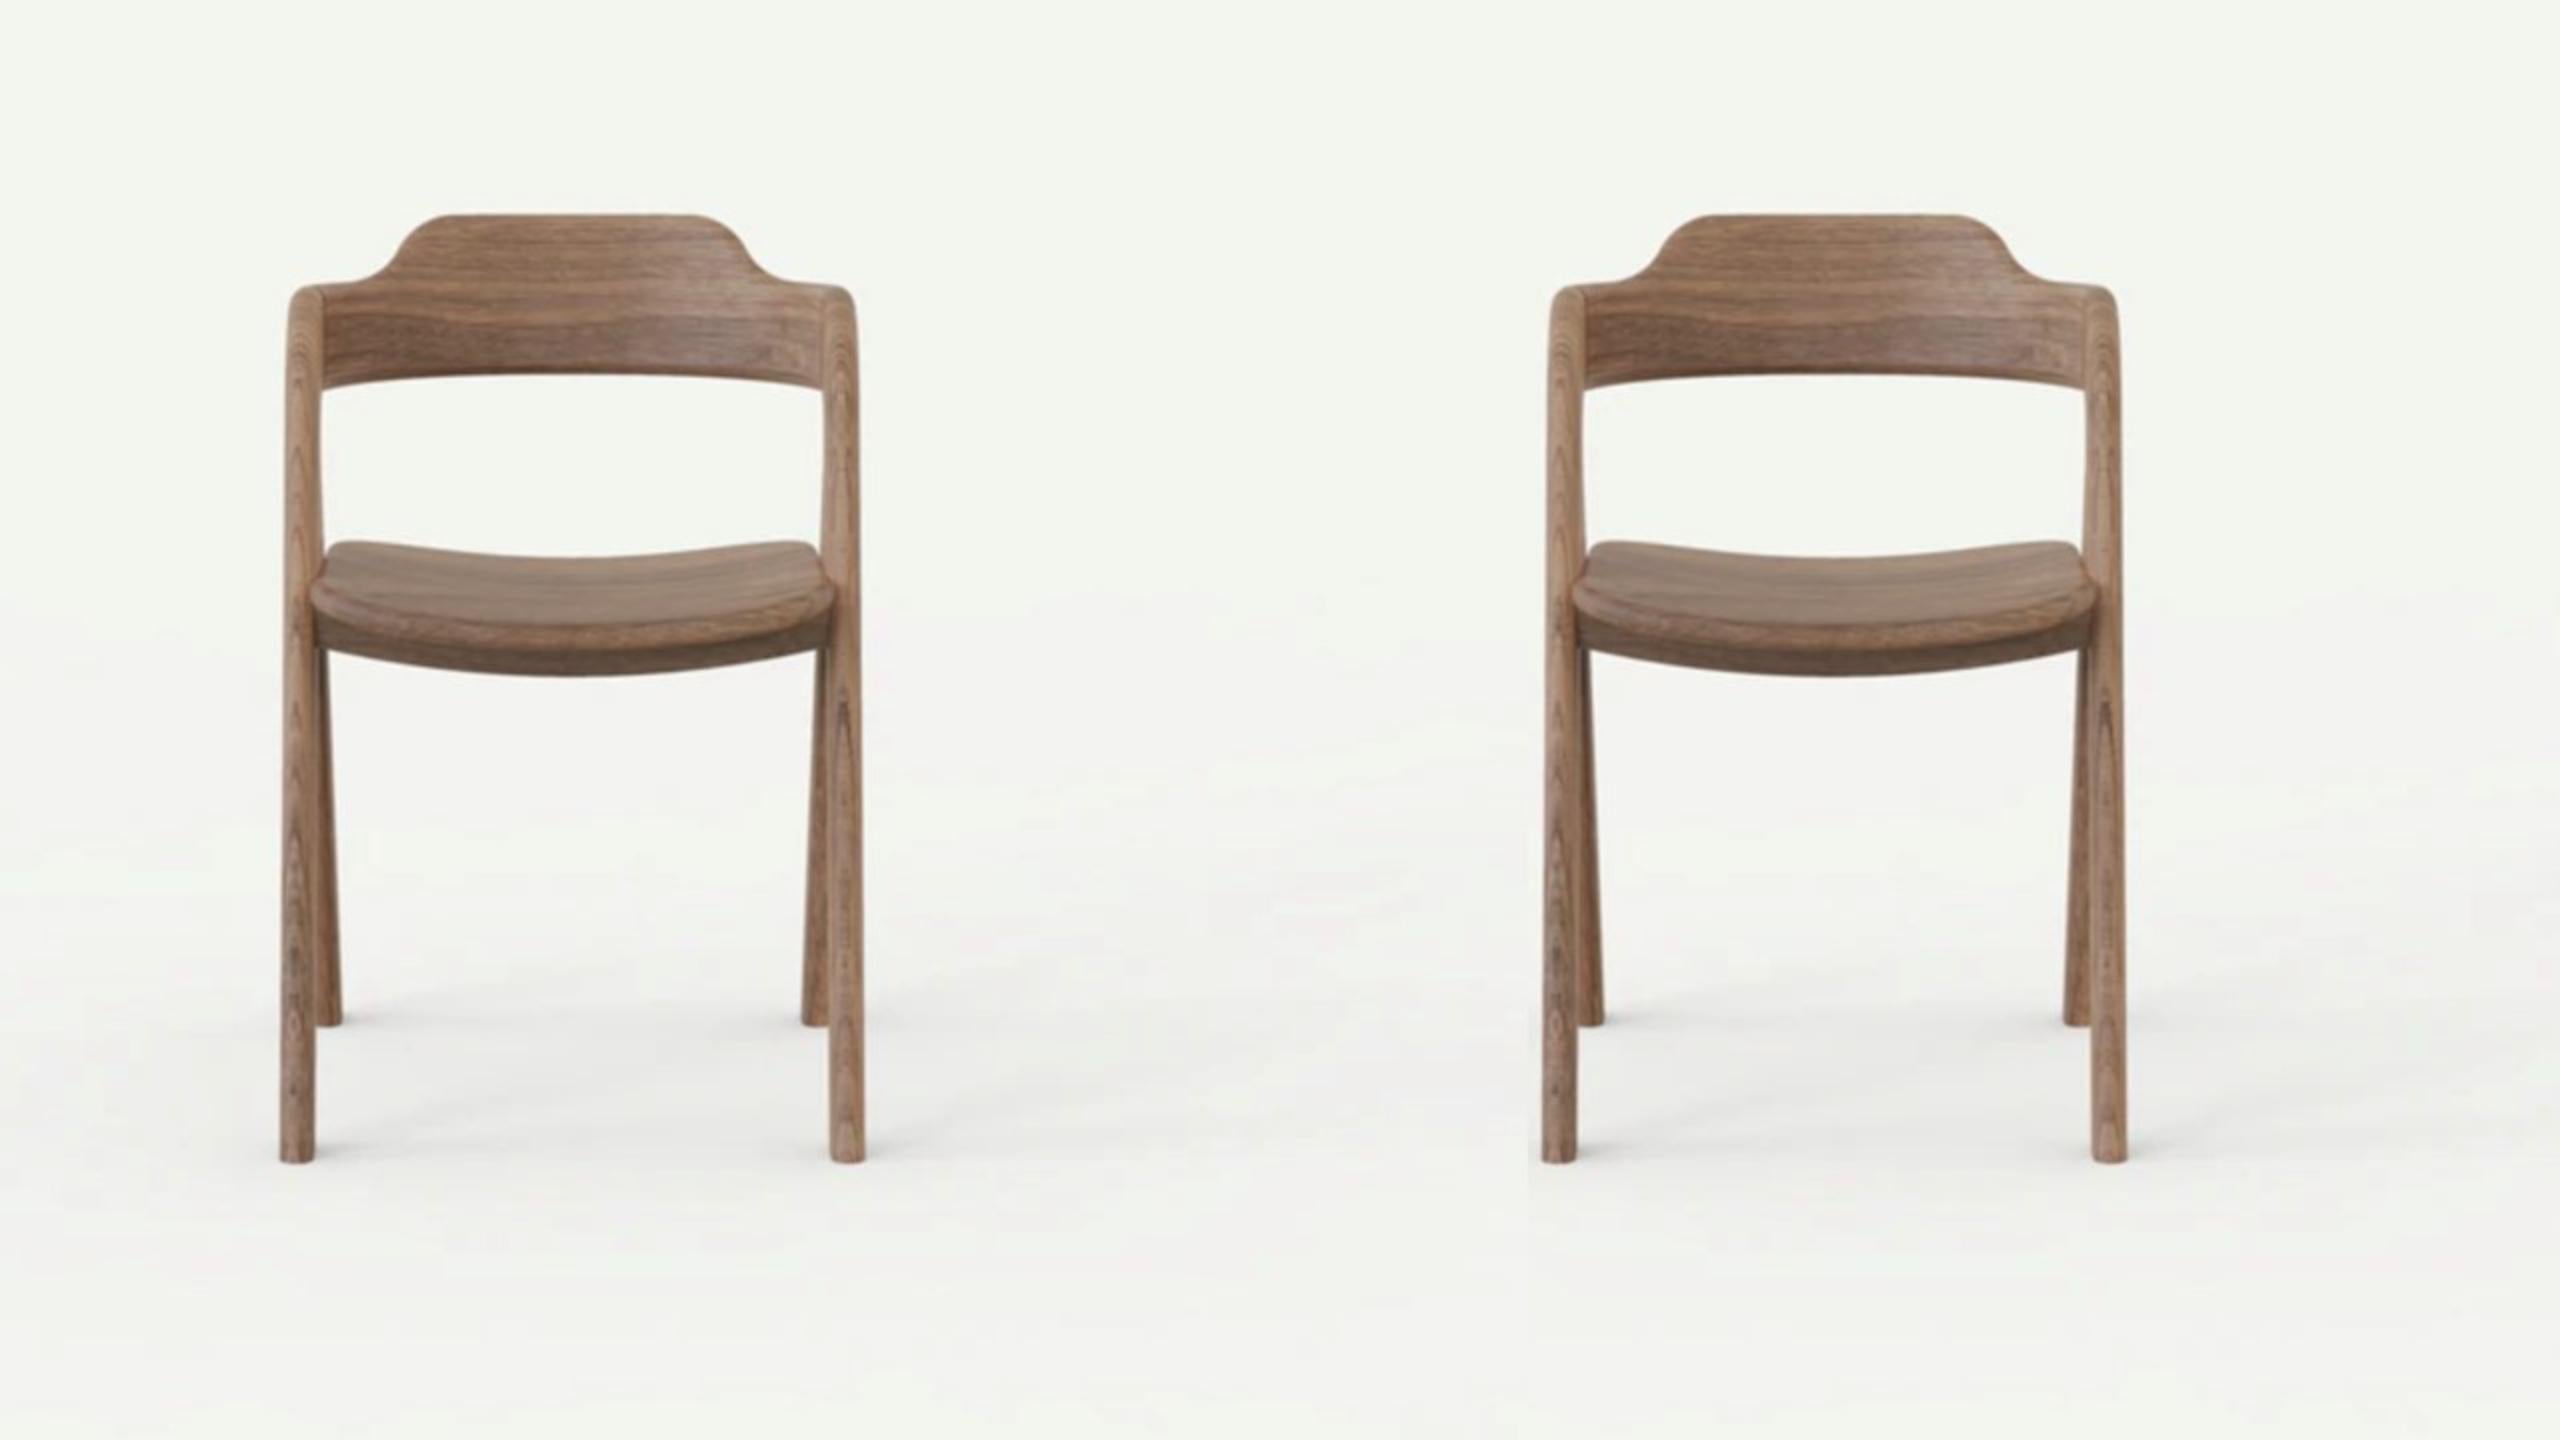 Ensemble de 2 chaises d'équilibre de Sebastián Angeles
Matériau : Noyer
Dimensions : L 40 x P 40 x 100 cm
Également disponible : Autres couleurs disponibles.

L'amour des processus, les propriétés des matériaux, les détails et les concepts font de